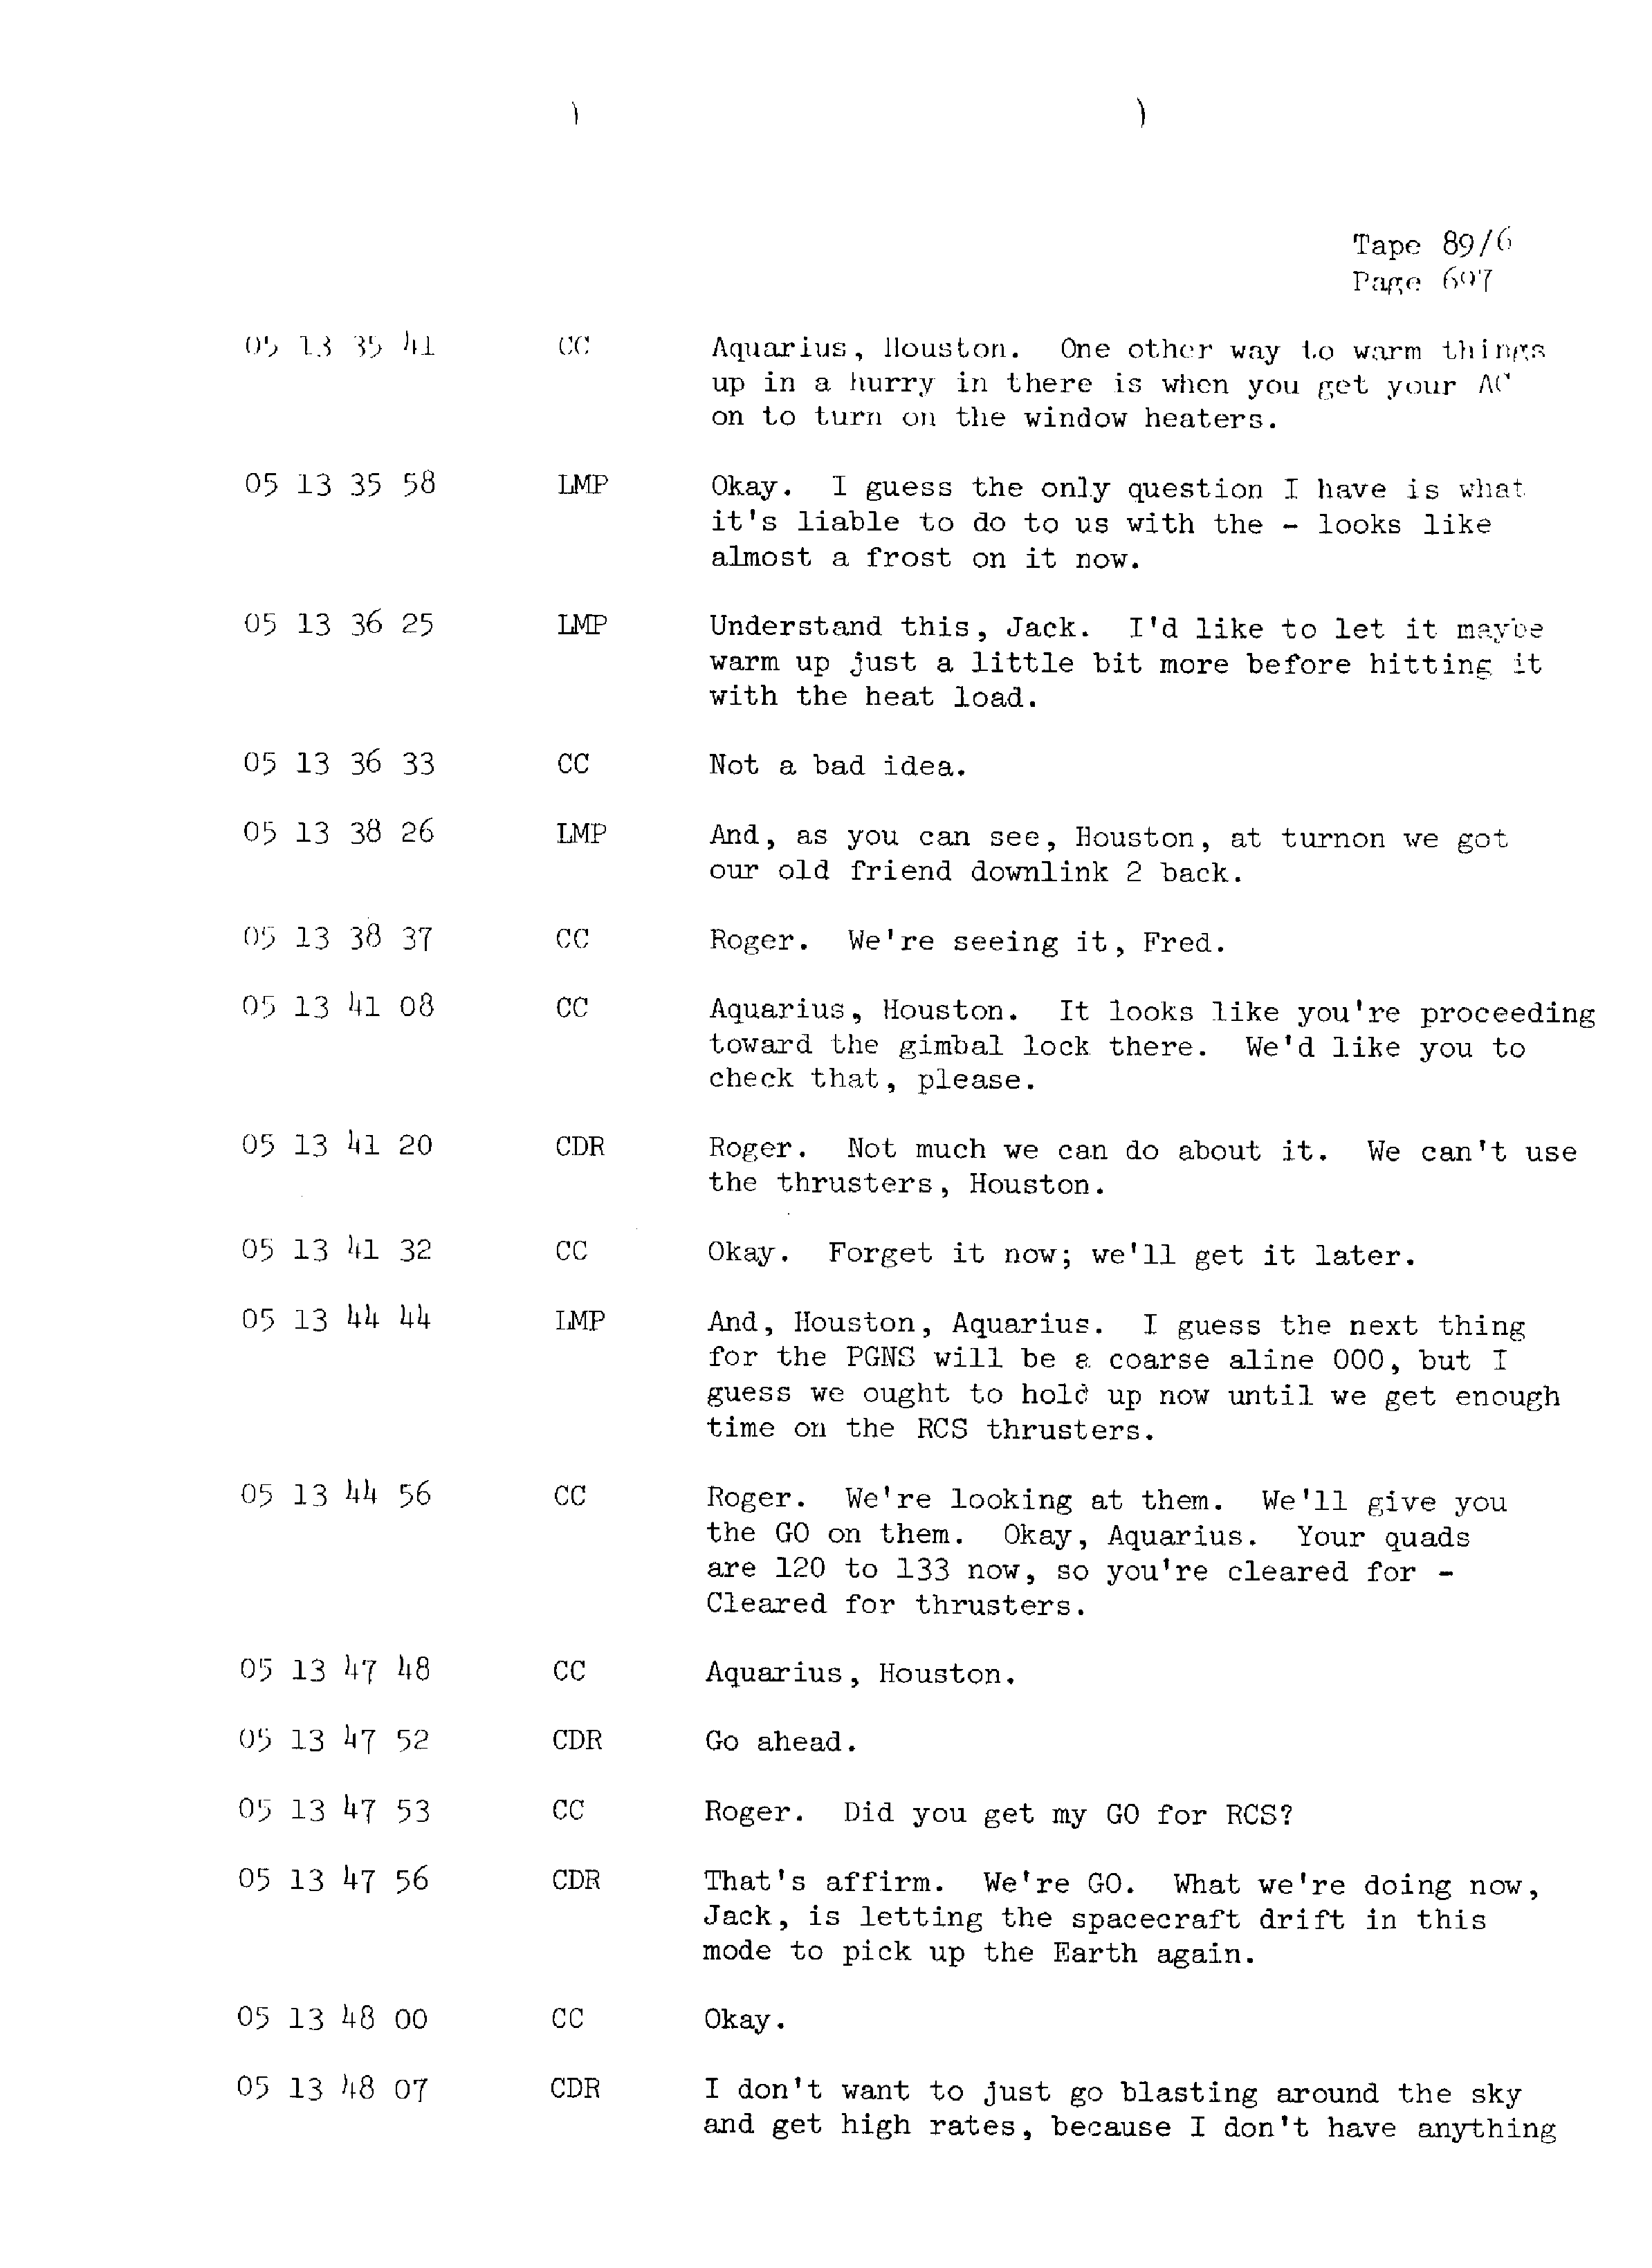 Page 704 of Apollo 13’s original transcript